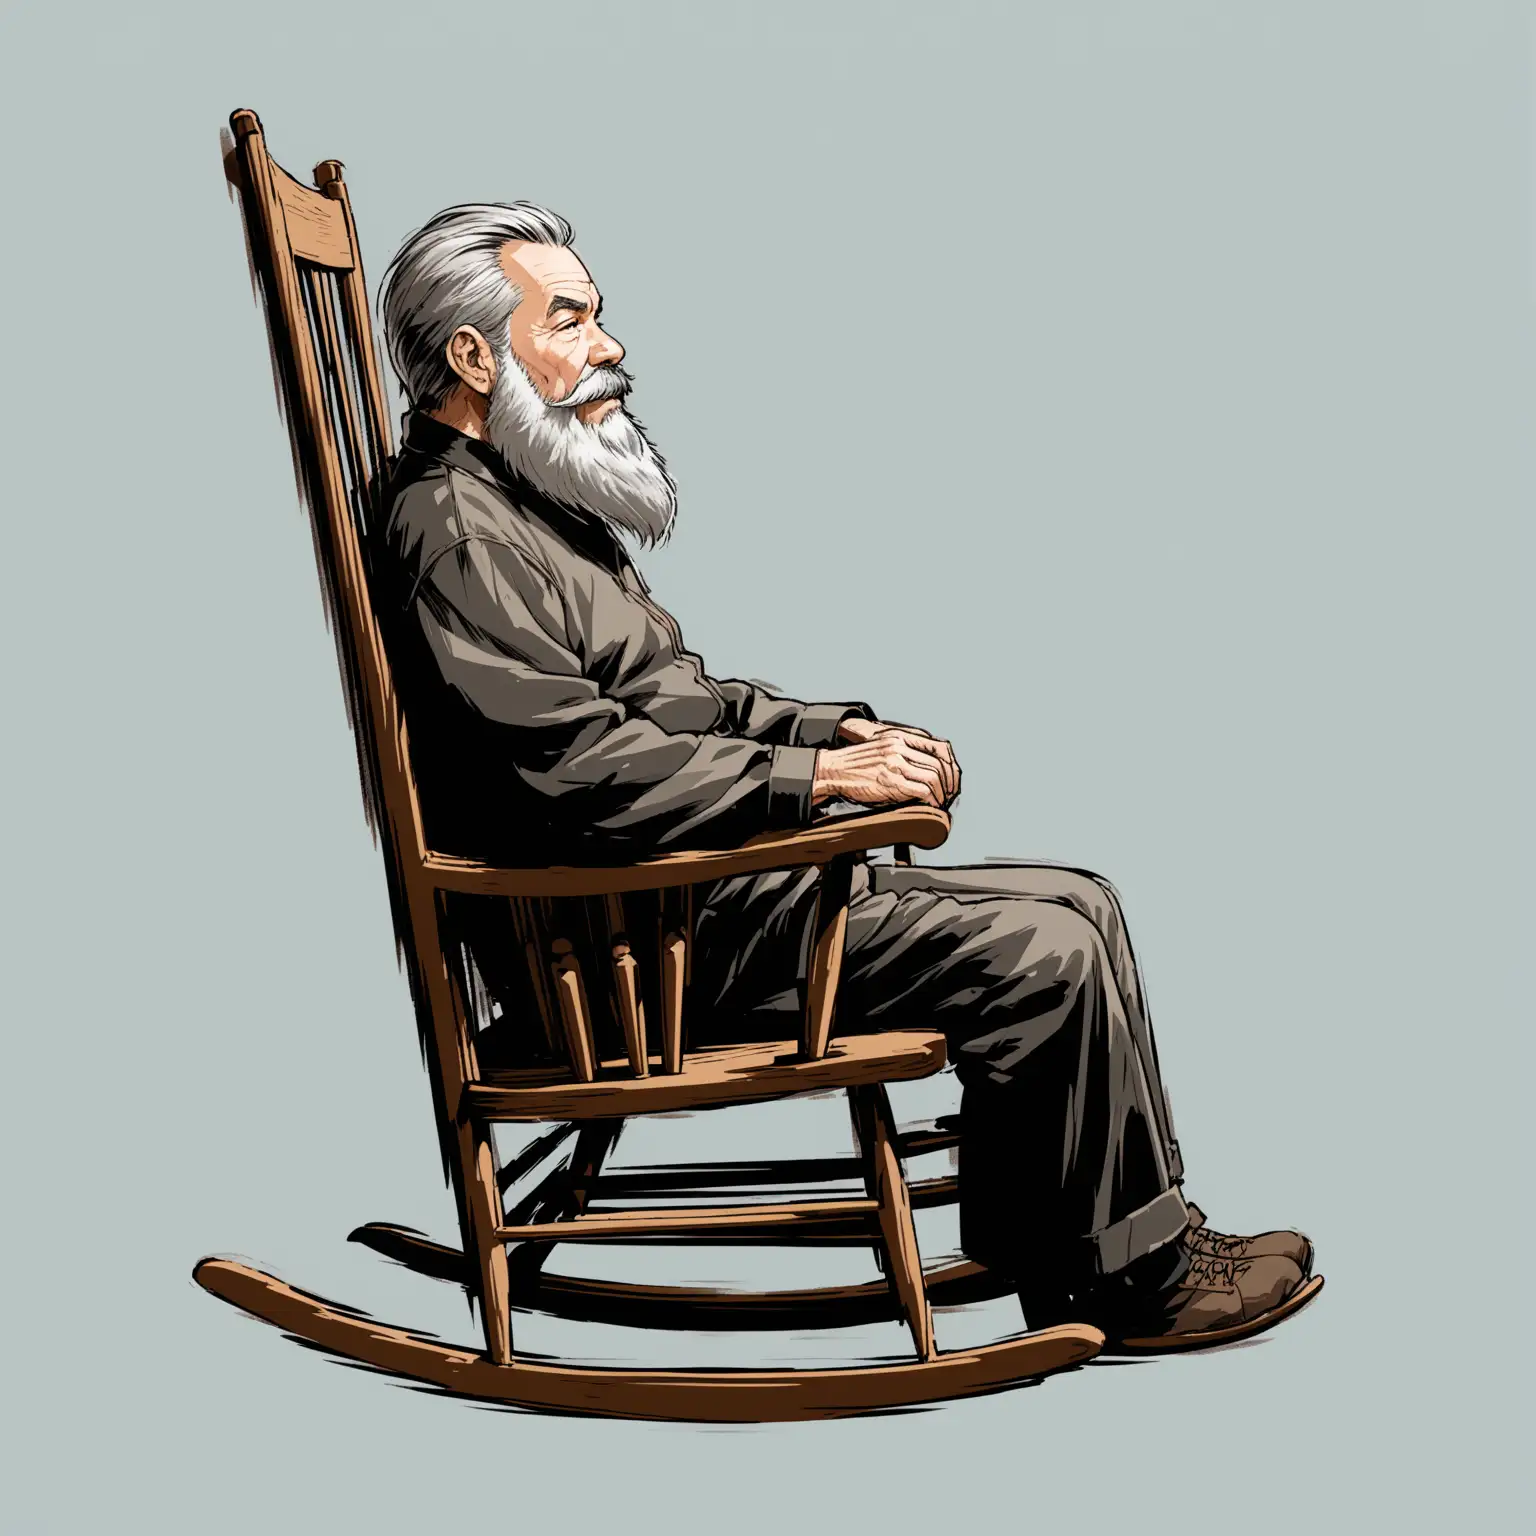 starszy Pan z siwą brodą buja się na fotelu. widok z boku obejmuje całą postać oraz fotel bujany, tło jest transparentne bez żadnych przedmiotów
